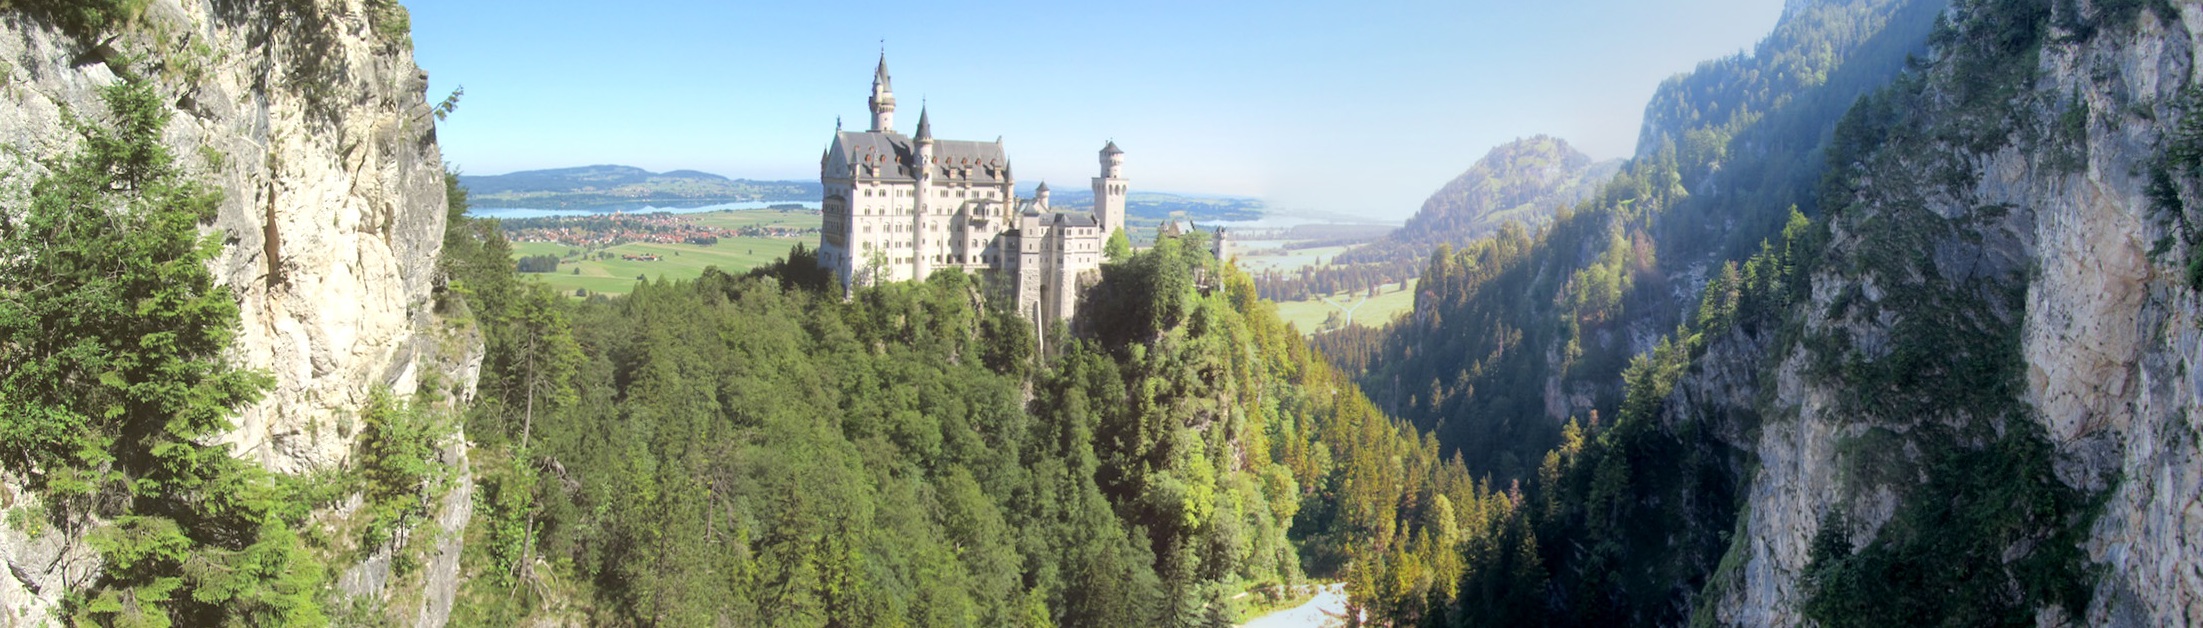 panorama: Neuschwanstein castle